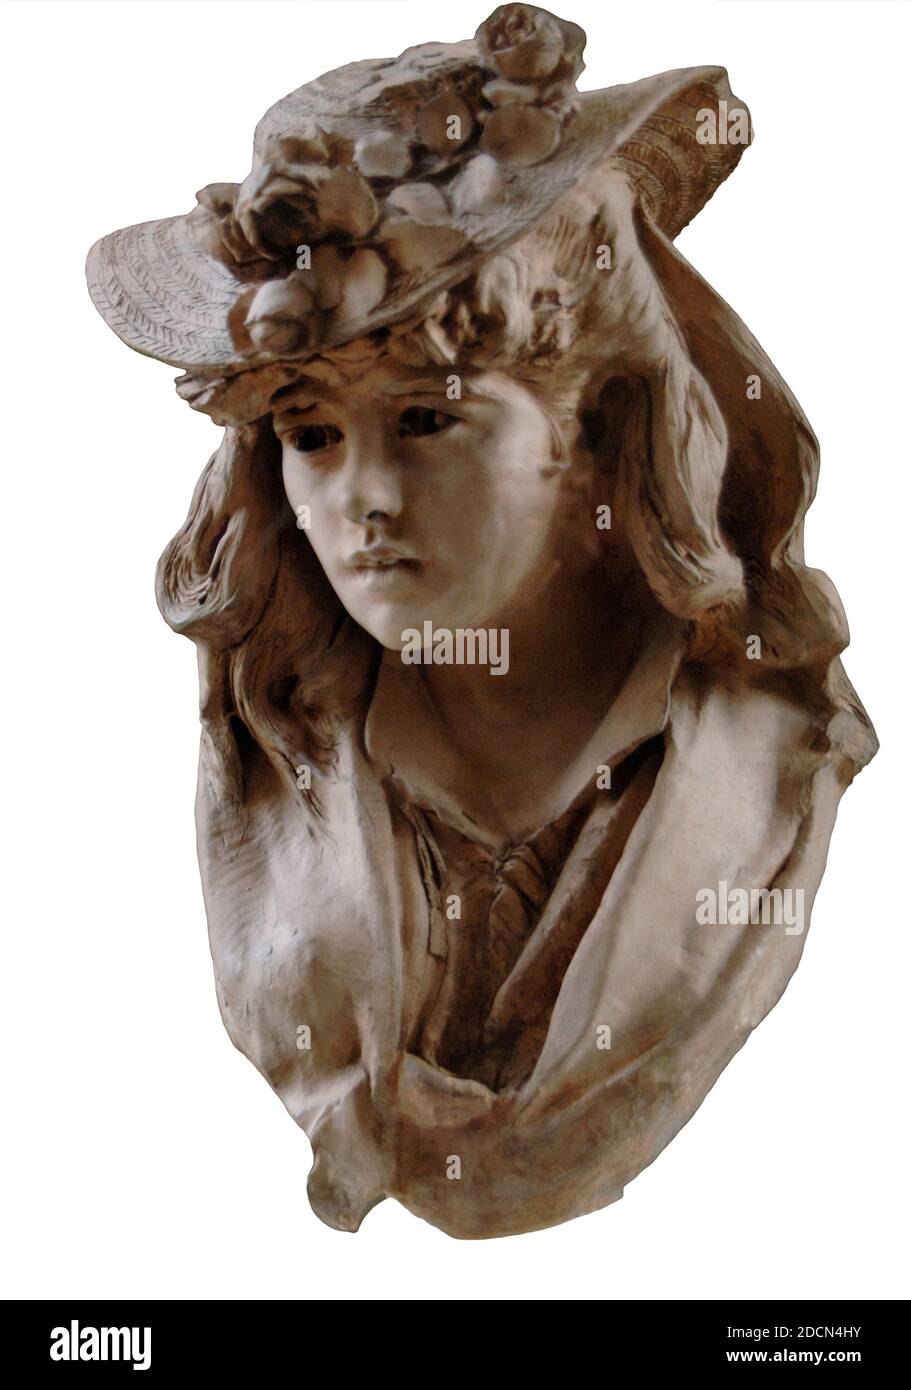 Auguste Rodin (1840-1917). Französischer Bildhauer. Junge Frau mit Blumenhut, ca. 1865. Terrakotta. Rodin Museum. Paris. Frankreich. Stockfoto